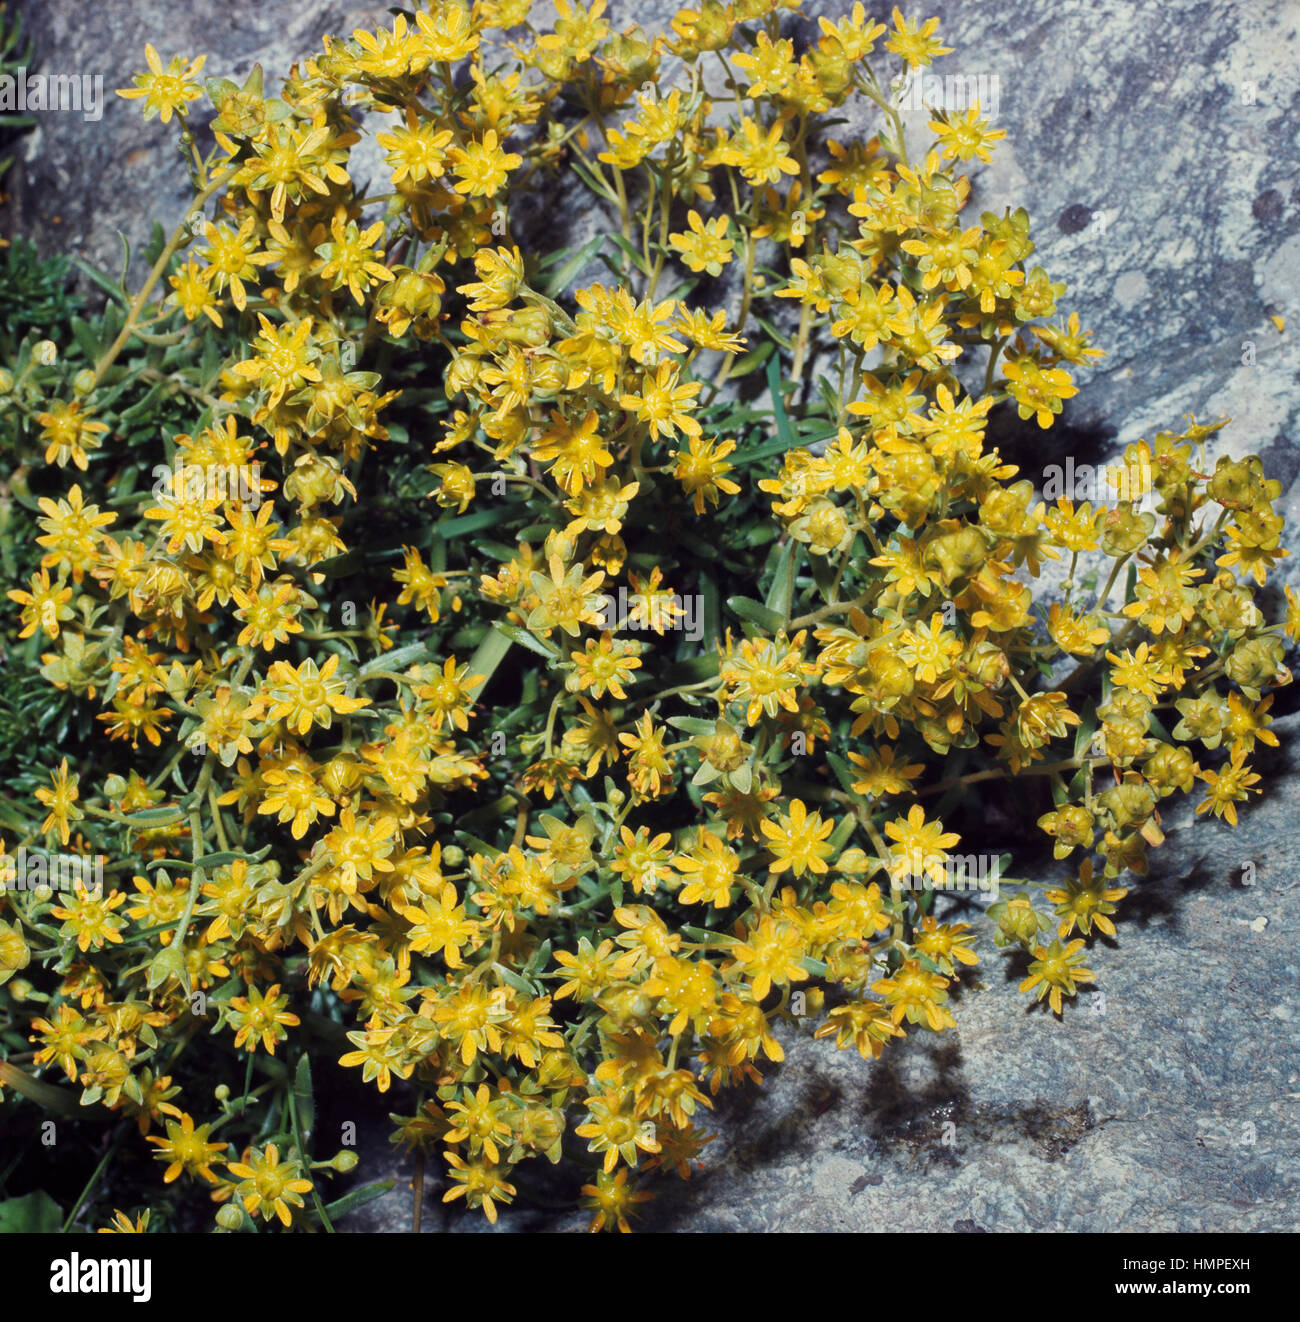 Montaña Amarilla las saxífragas rojo o amarillo (Saxifraga Aizoides las saxífragas rojo), Saxifragaceae. Foto de stock